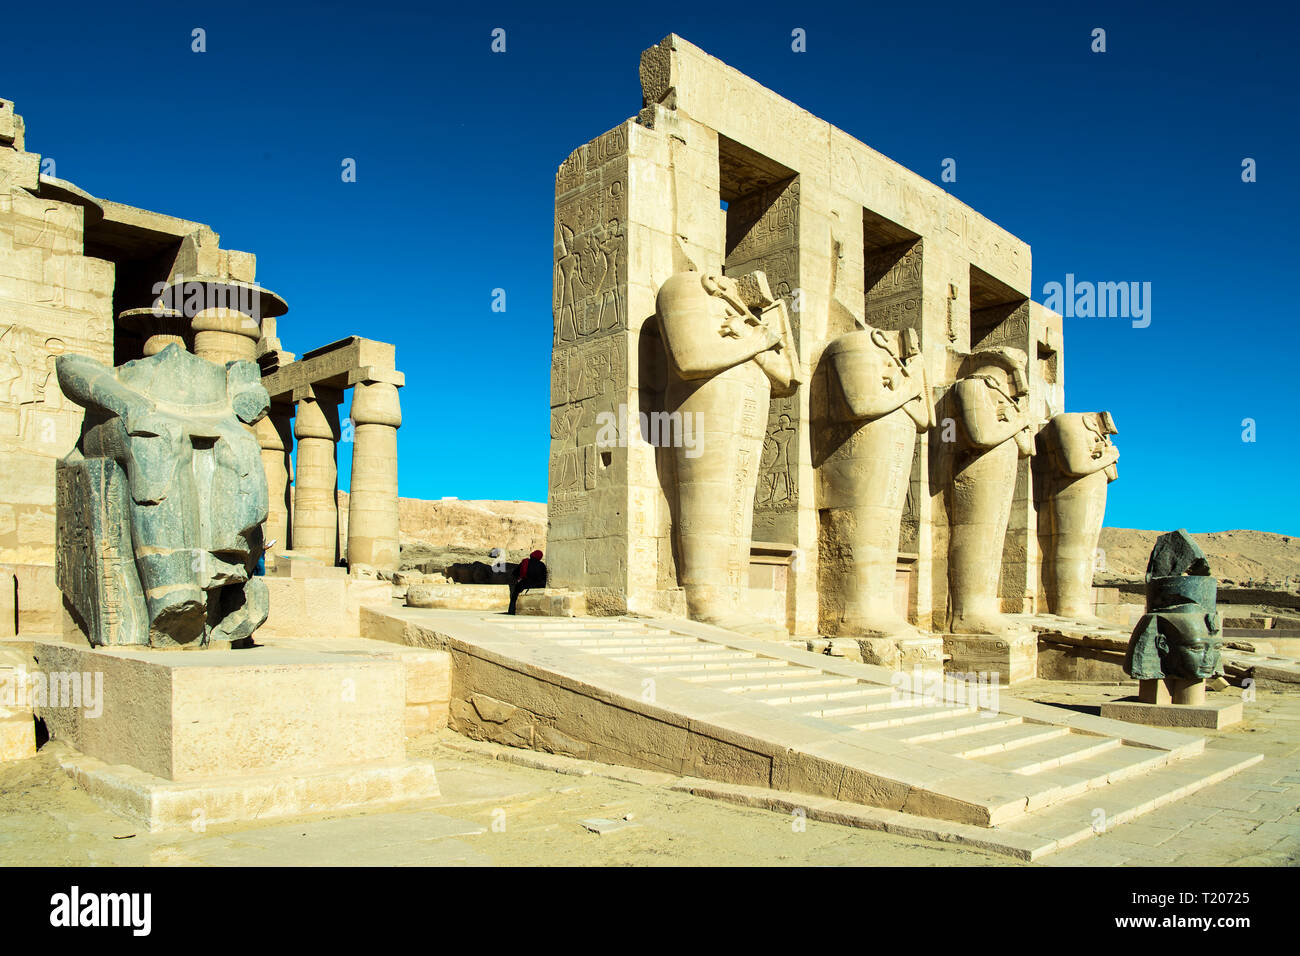 Ägypten, Luxor, Theben-West, Ramesseum - der Totentempel Ramses II. Stock Photo